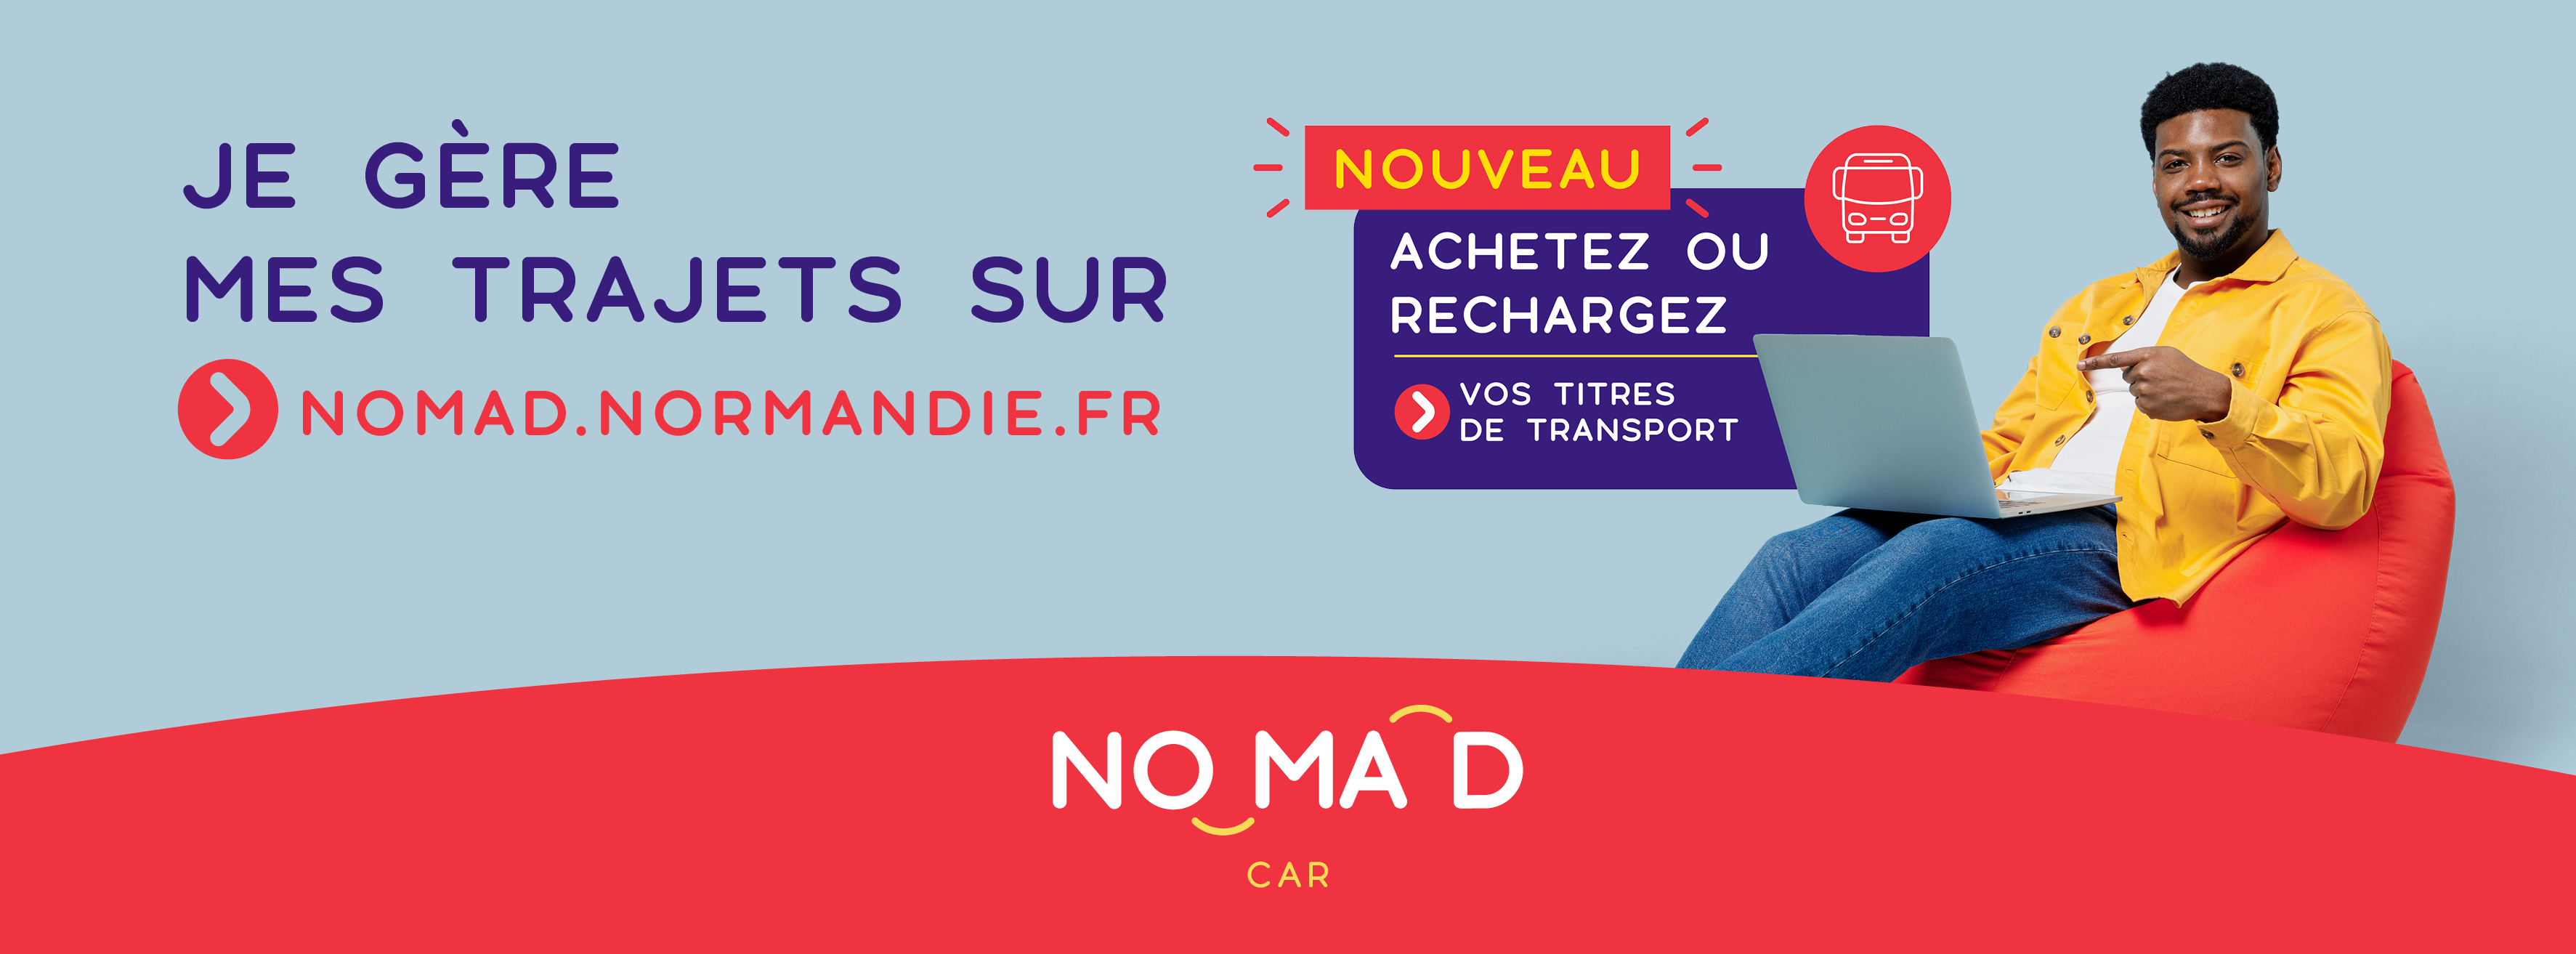 Je gère mes trajets sur nomad.normandie.fr